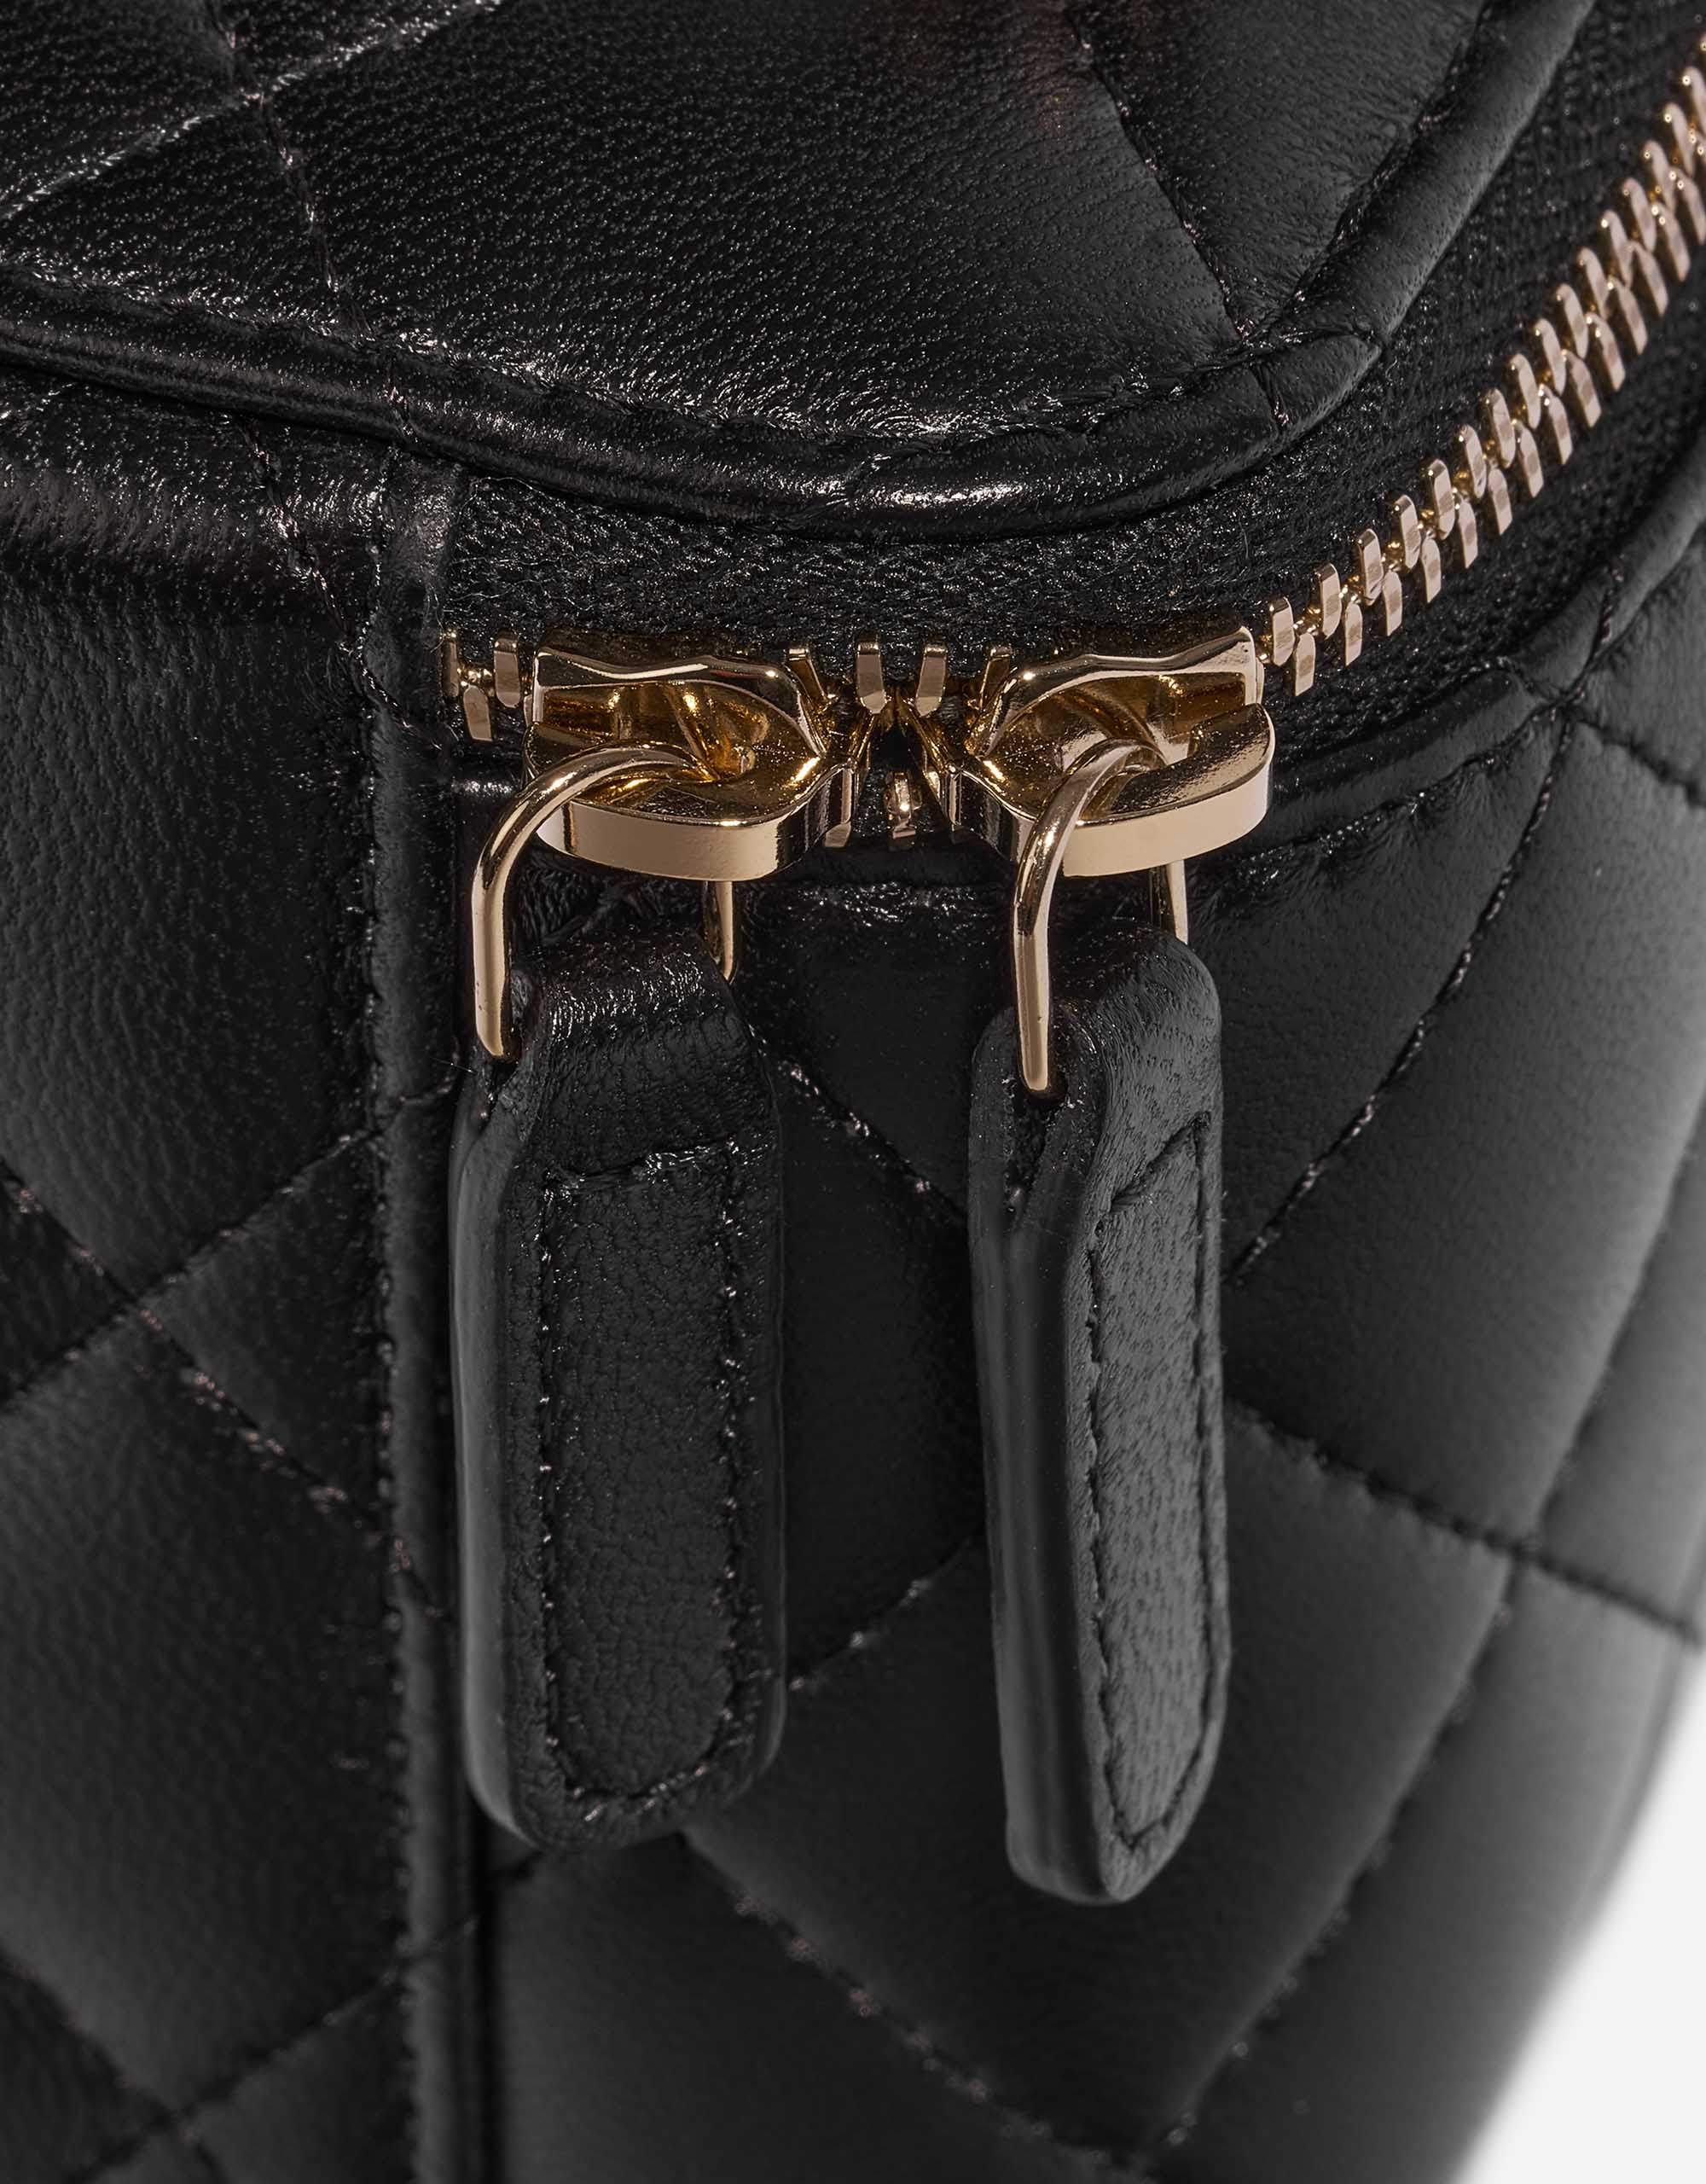 Gebrauchte Chanel Tasche Vanity Case Klein Lammleder Schwarz Schwarzes Schließsystem | Verkaufen Sie Ihre Designer-Tasche auf Saclab.com